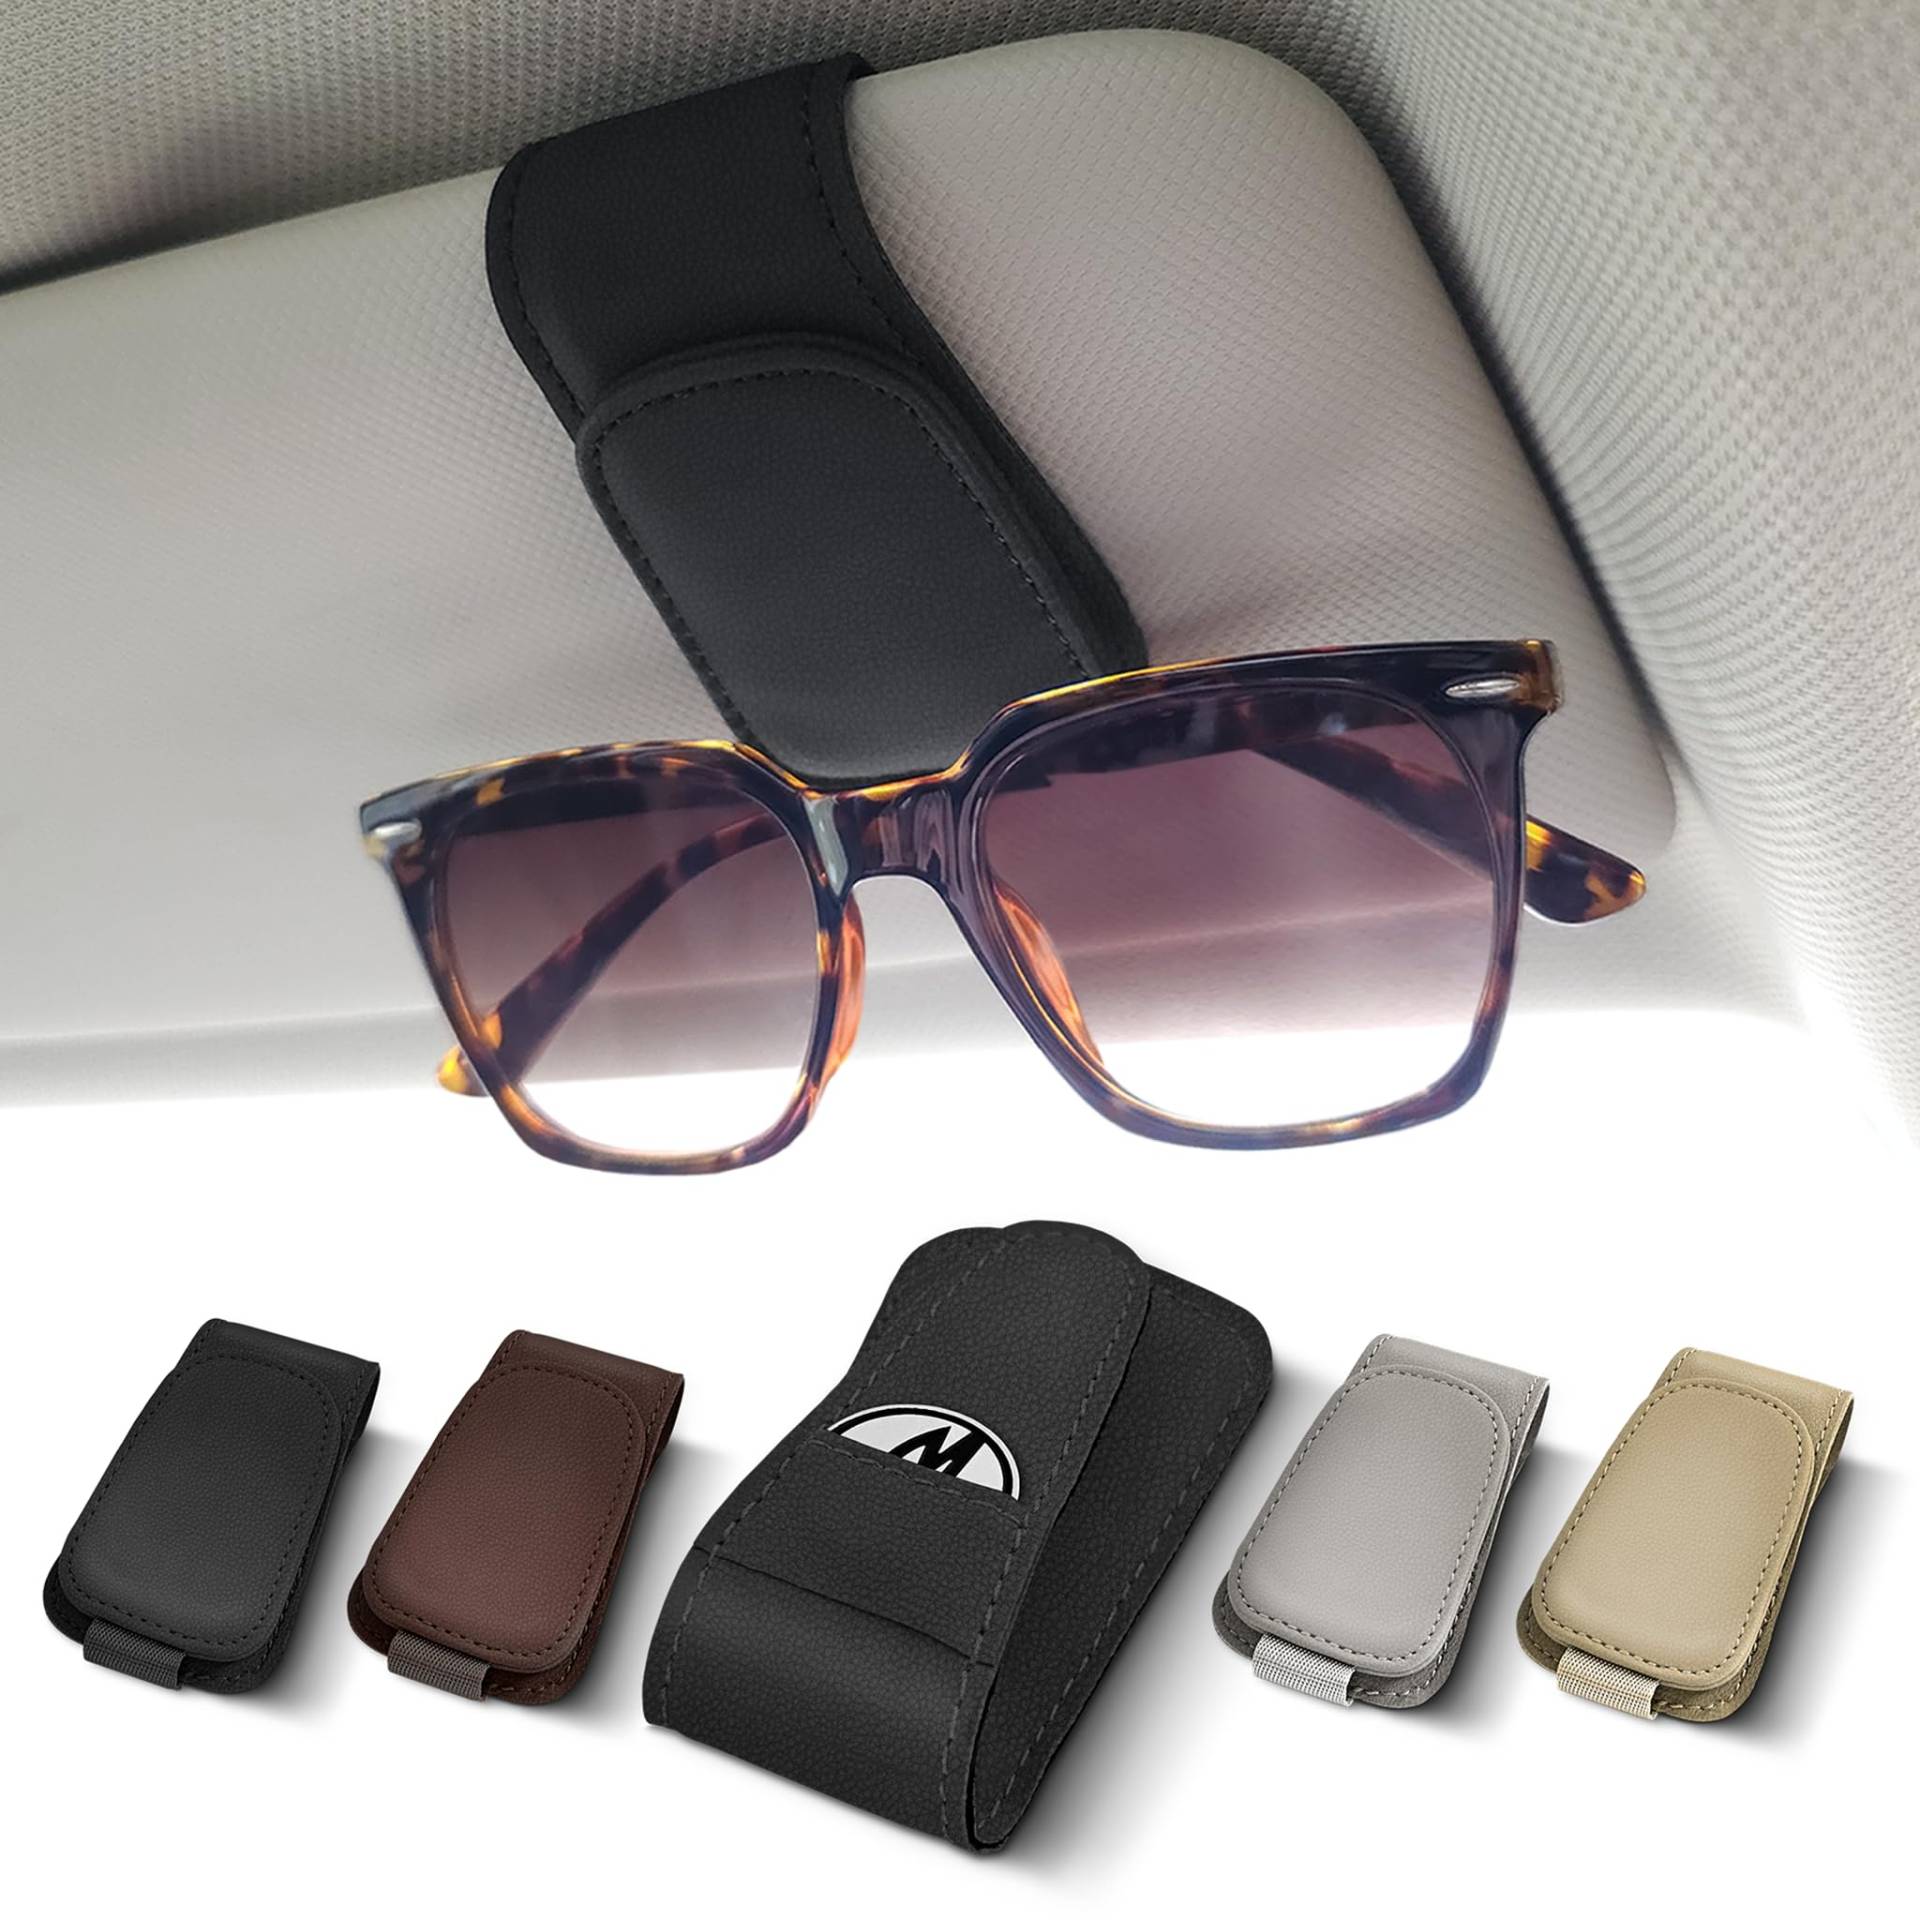 Moterior – Brillenclip Sonnenblende inklusive Einkaufswagenchip – Brillenclip Auto – Sonnenbrillenhalterung Auto von Moterior